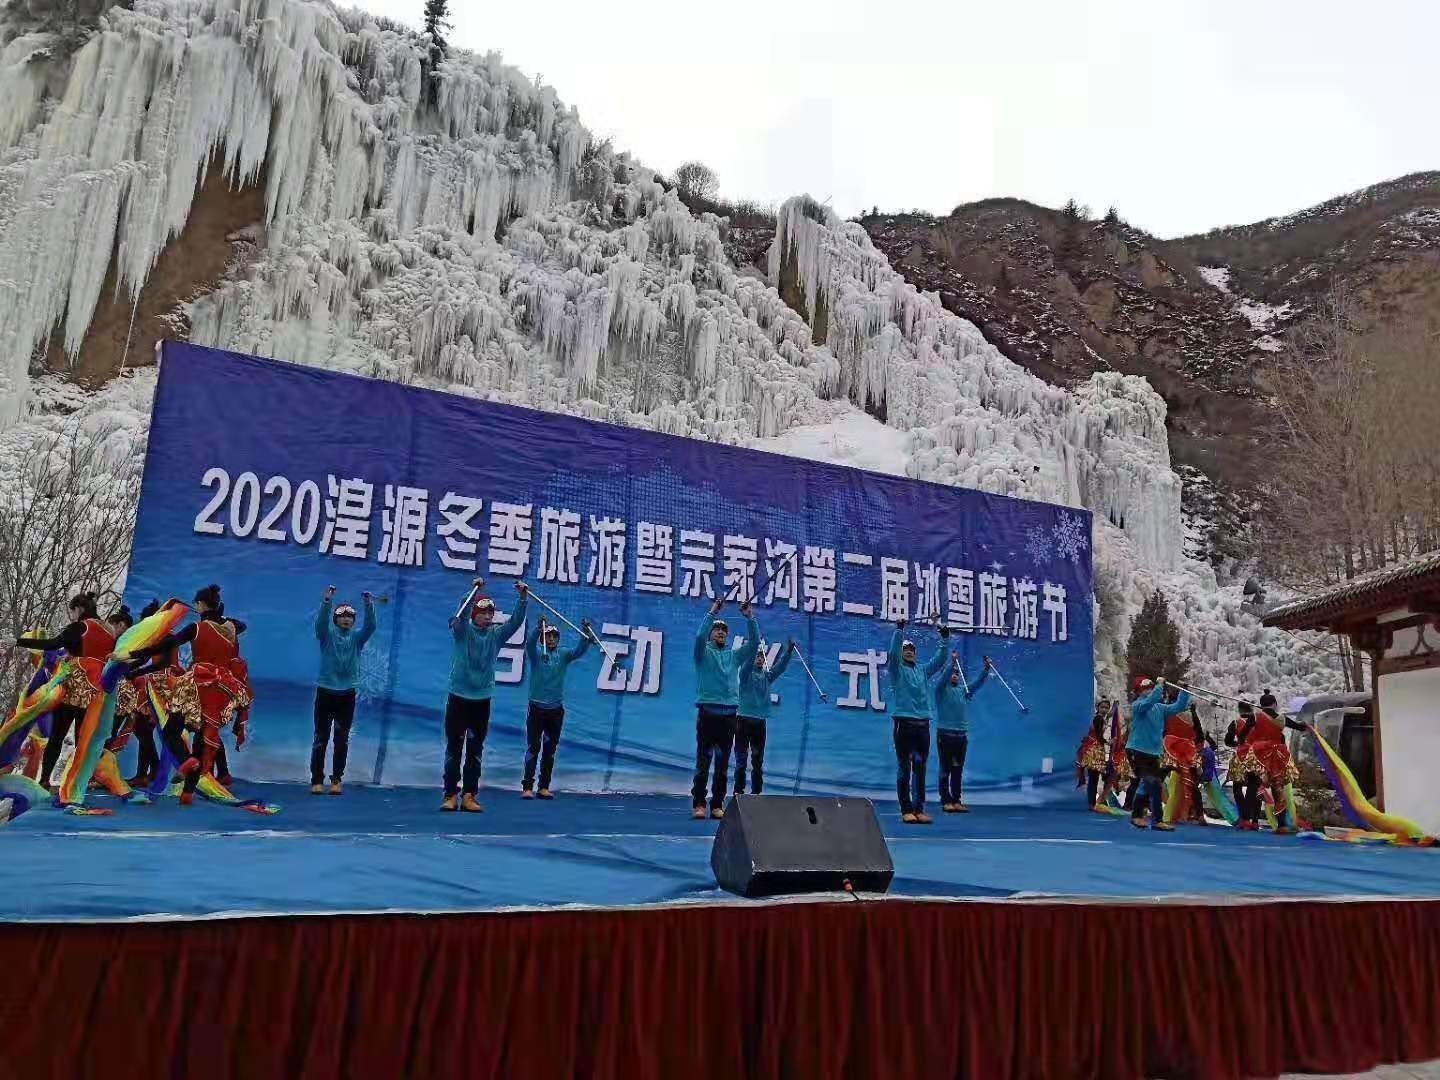 2020年湟源冬季旅游暨第二届冰雪旅游节开幕